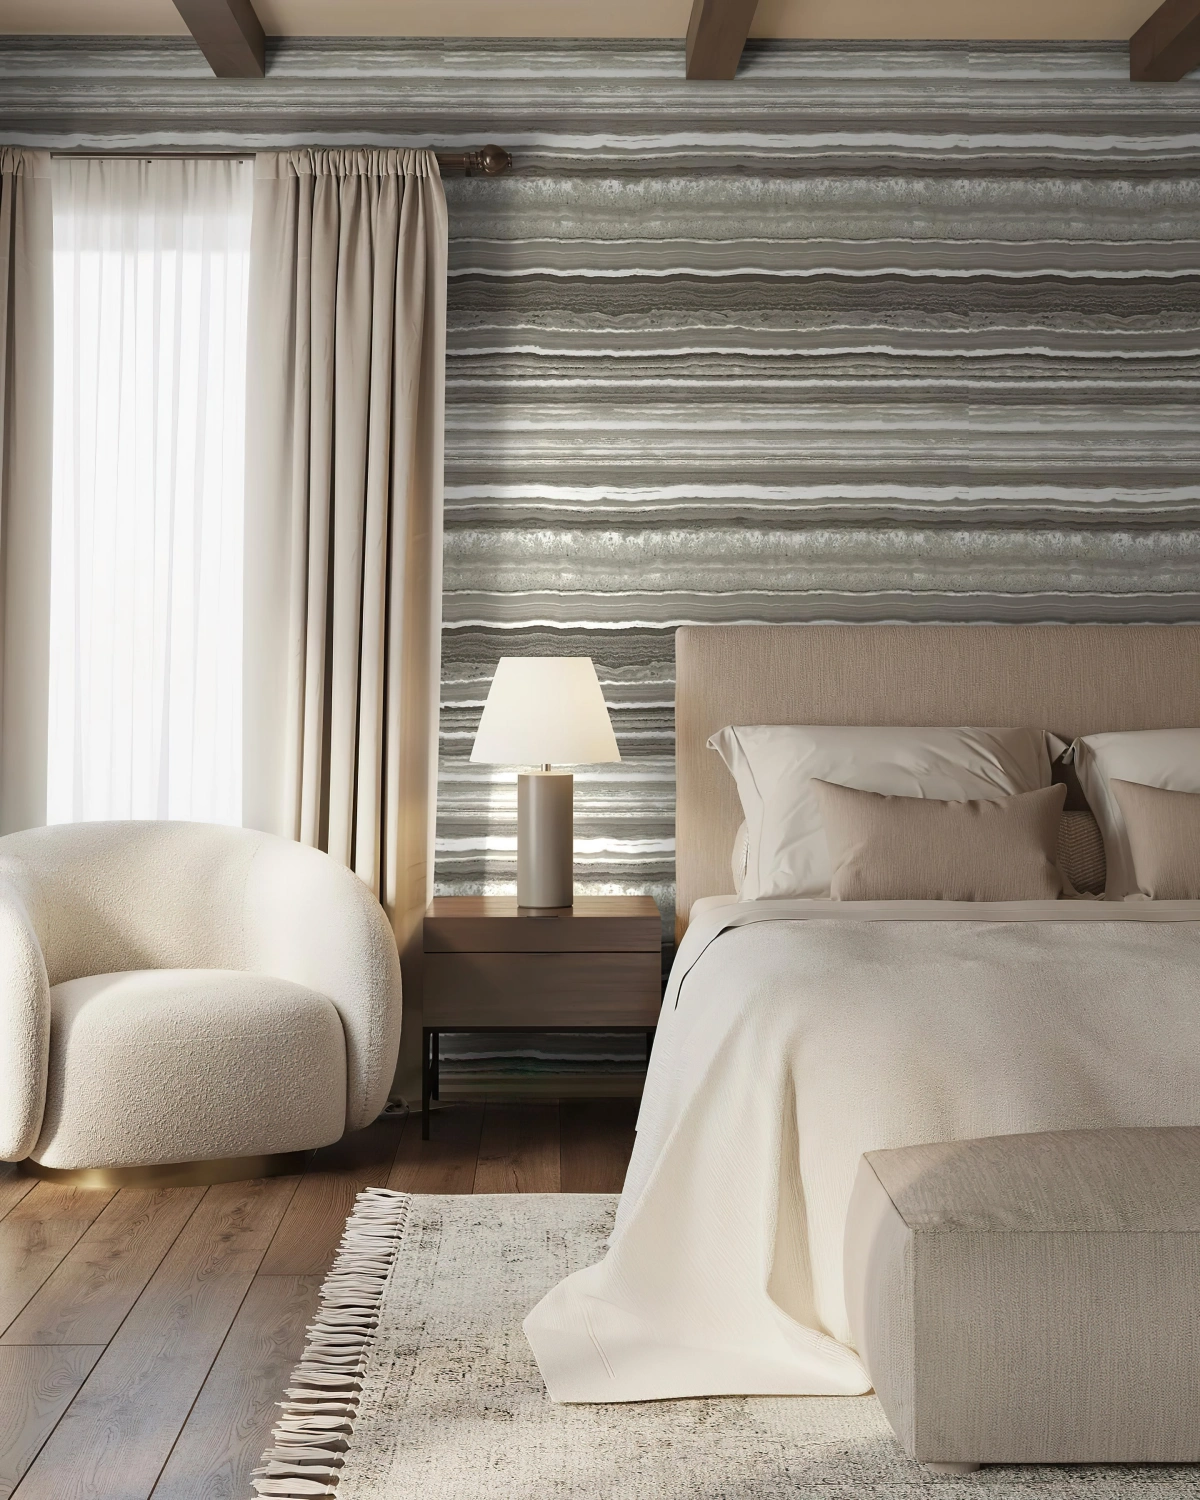 rideaux beige deco chambre adulte moderne tete de lit beige tapis franges